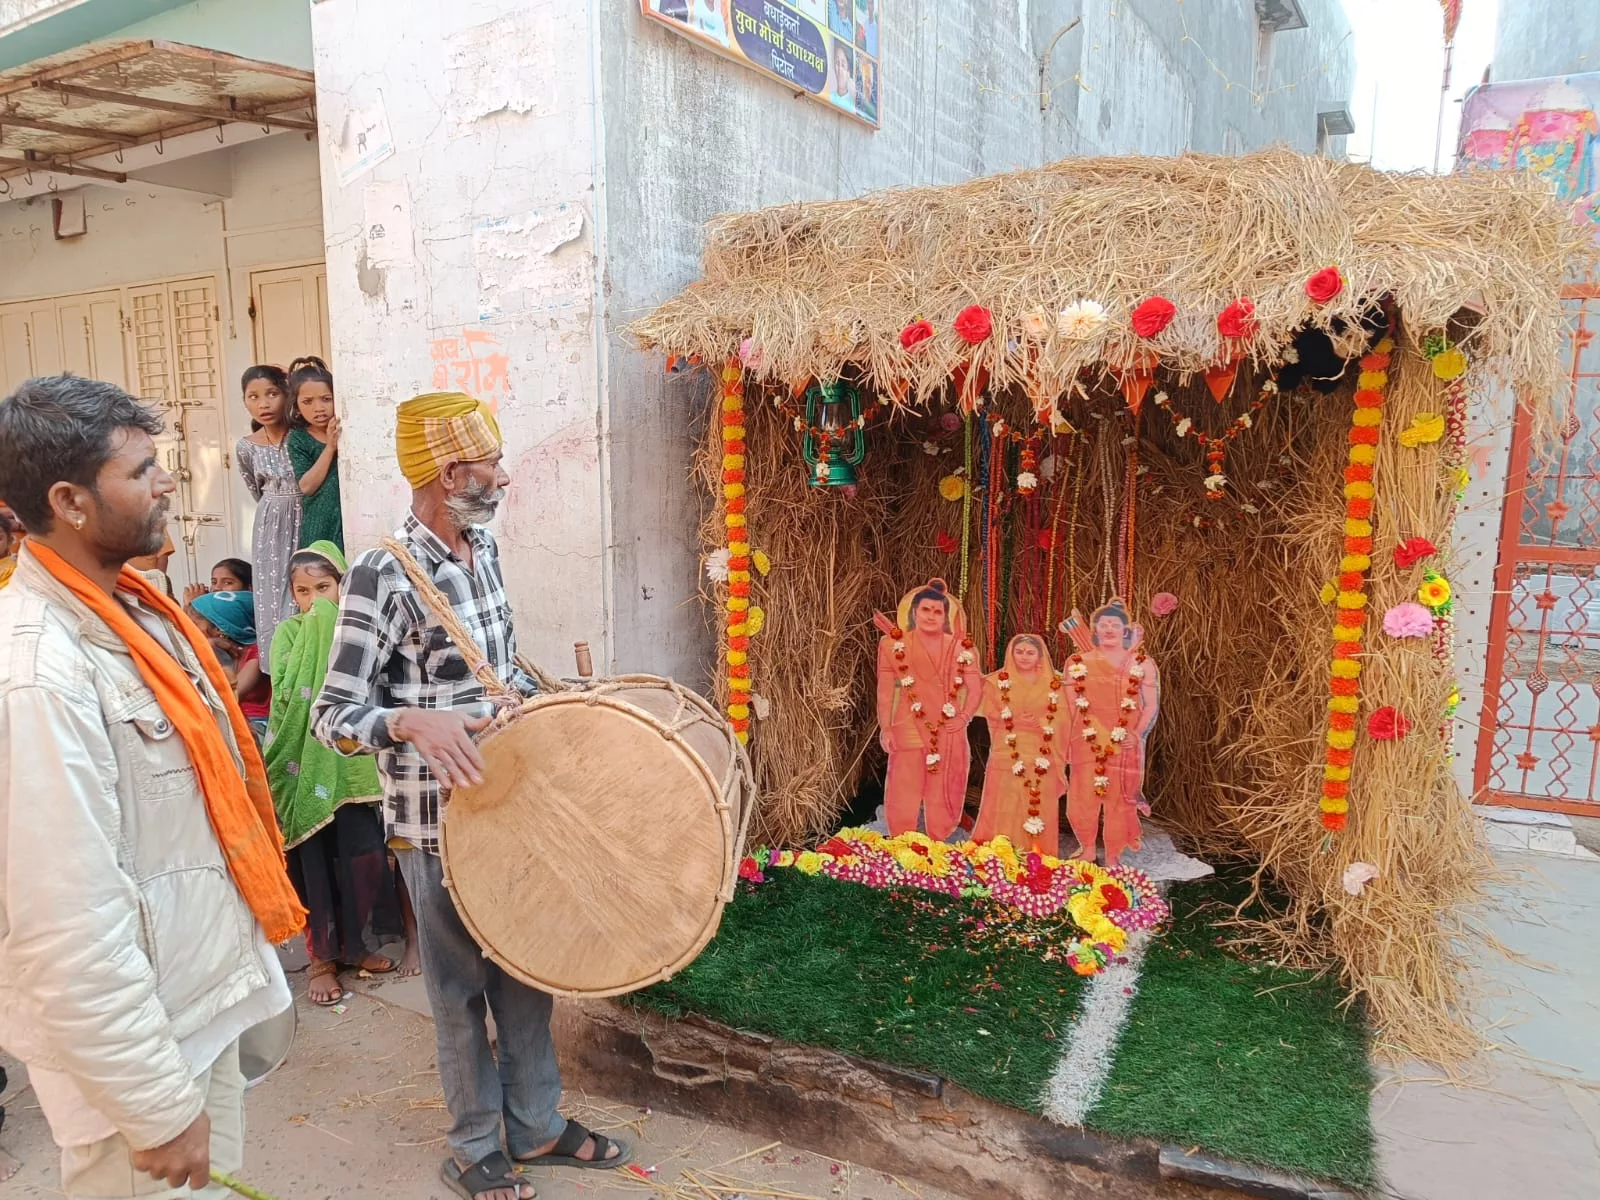 श्री राम प्राण प्रतिष्ठा महोत्सव पर ध्वजा पताका रोशनी से नहाया पिटोल नगर, बड़ी स्क्रीन पर दिखाया गया प्राण प्रतिष्ठा महोत्सव का लाइव प्रसारण | New India Times